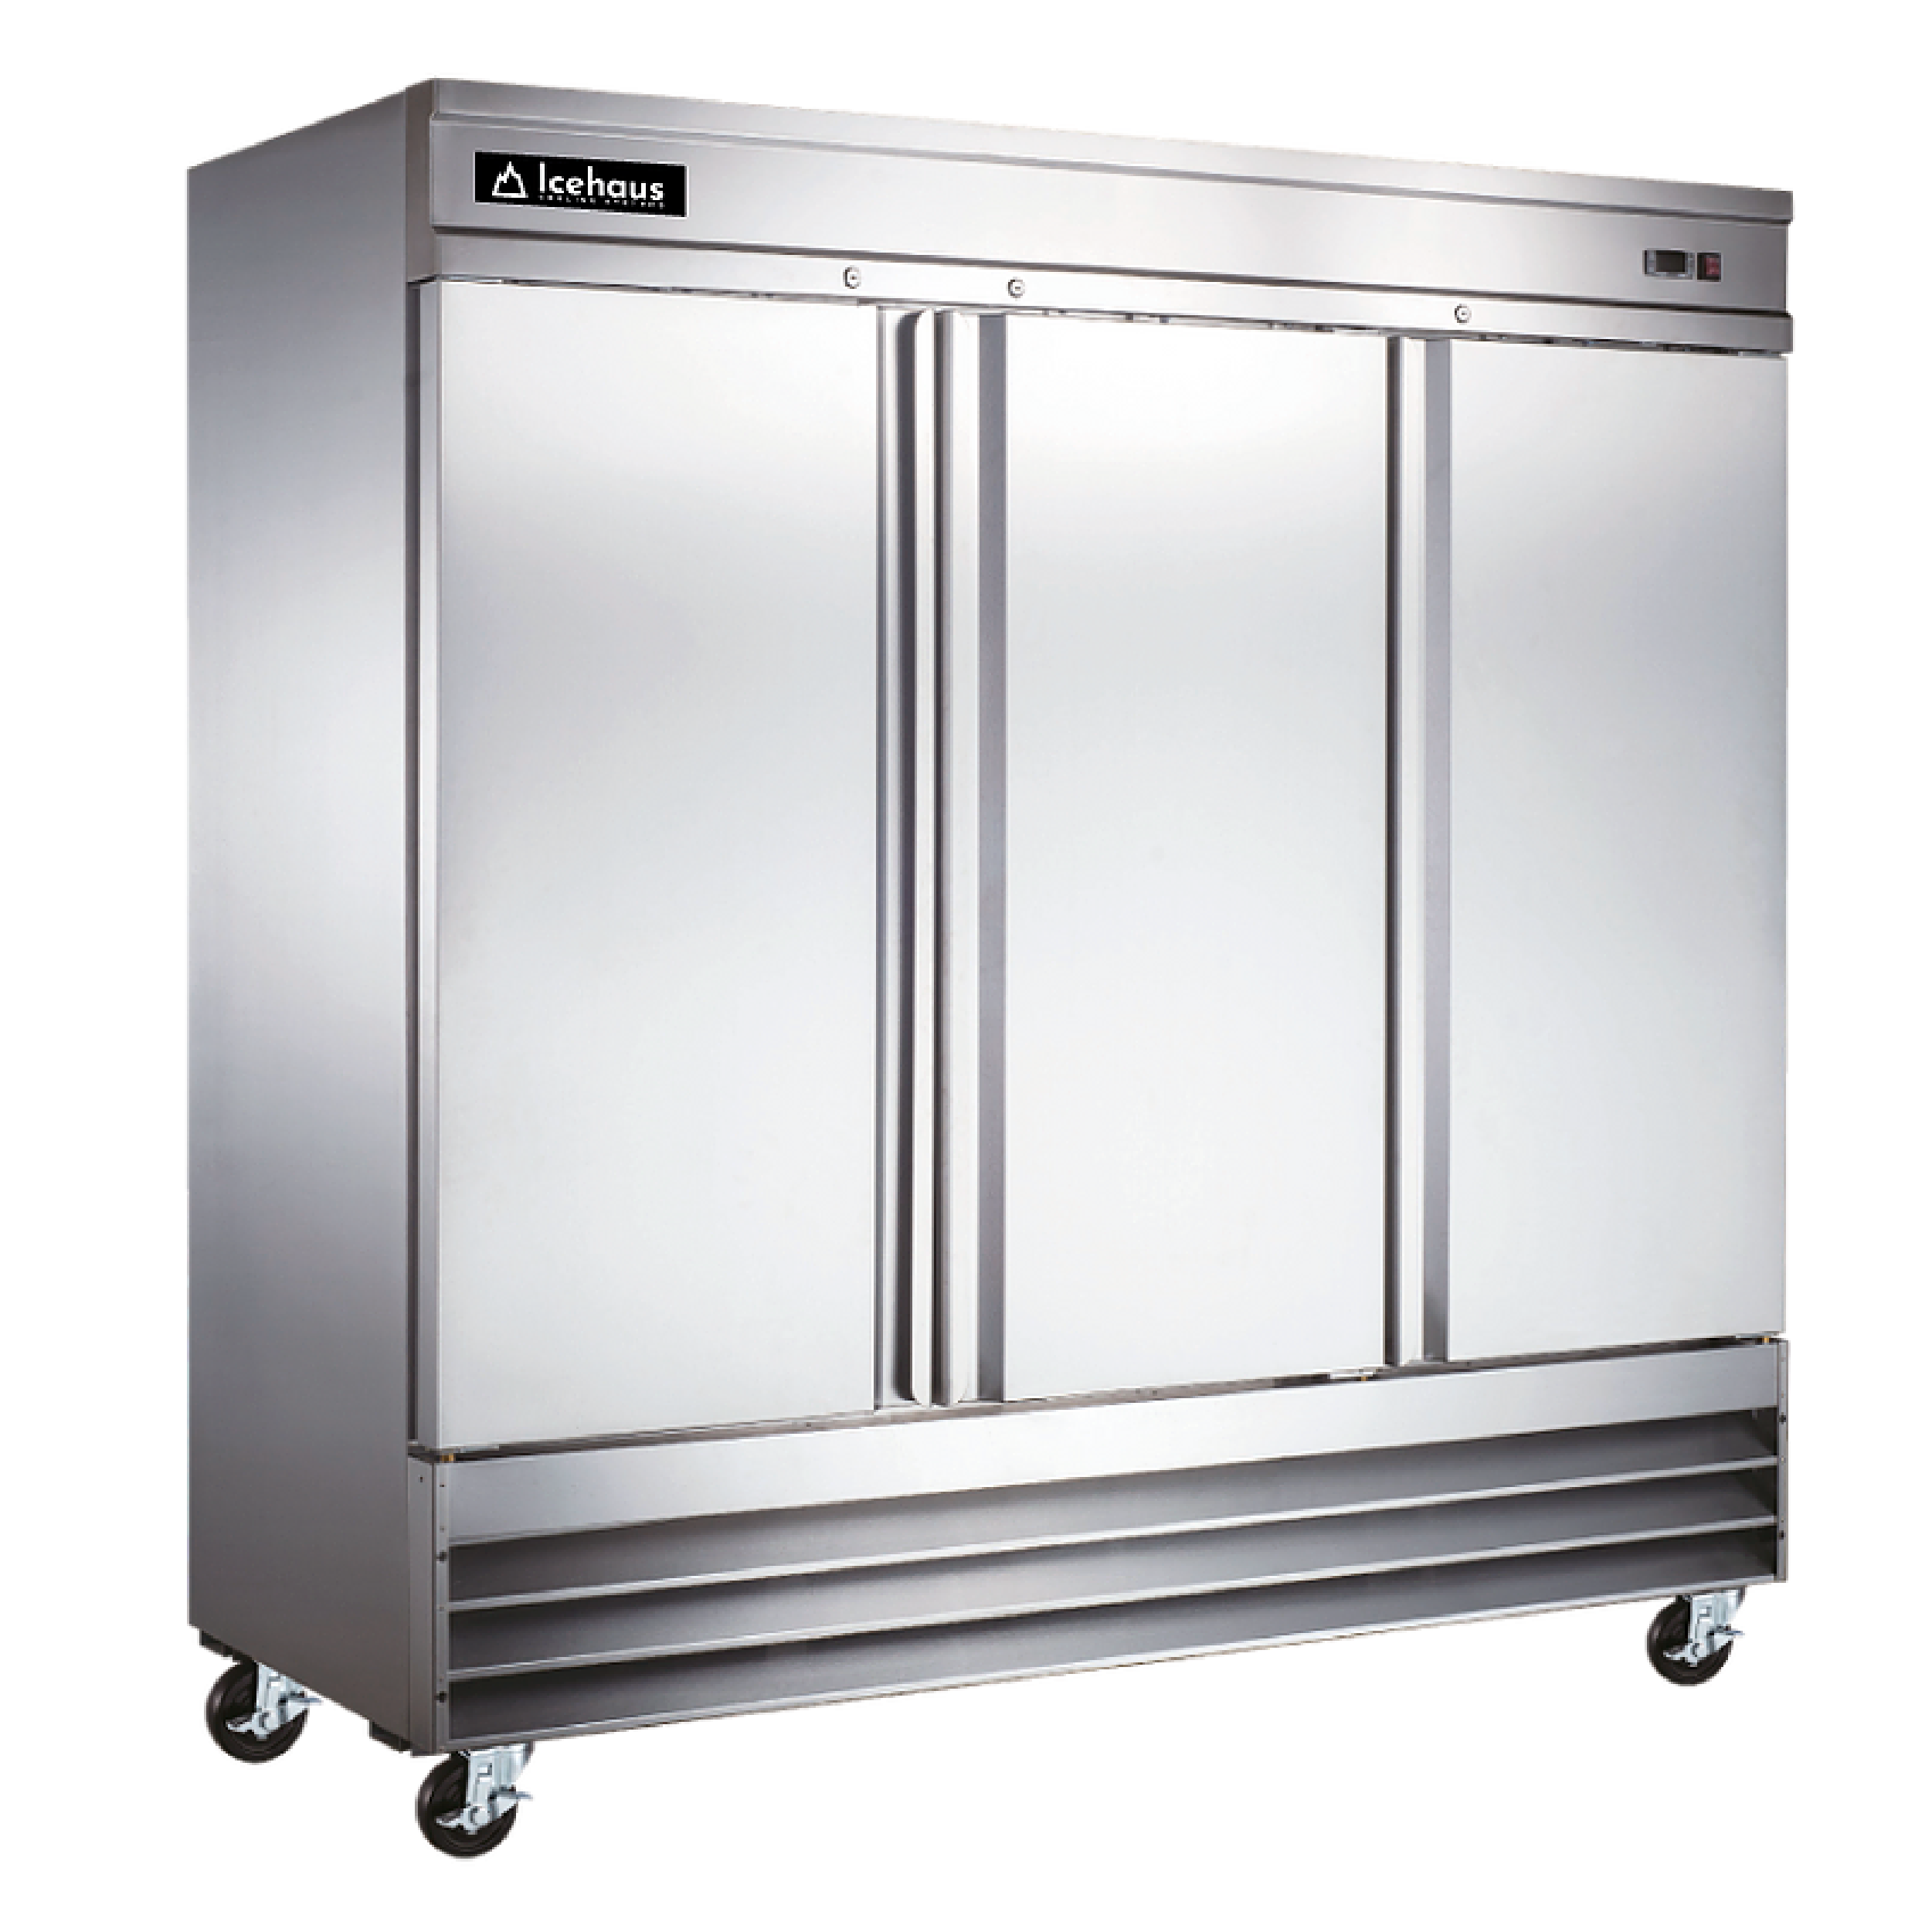 Congeladores verticales metalfrio, congeladores sobre mostrador